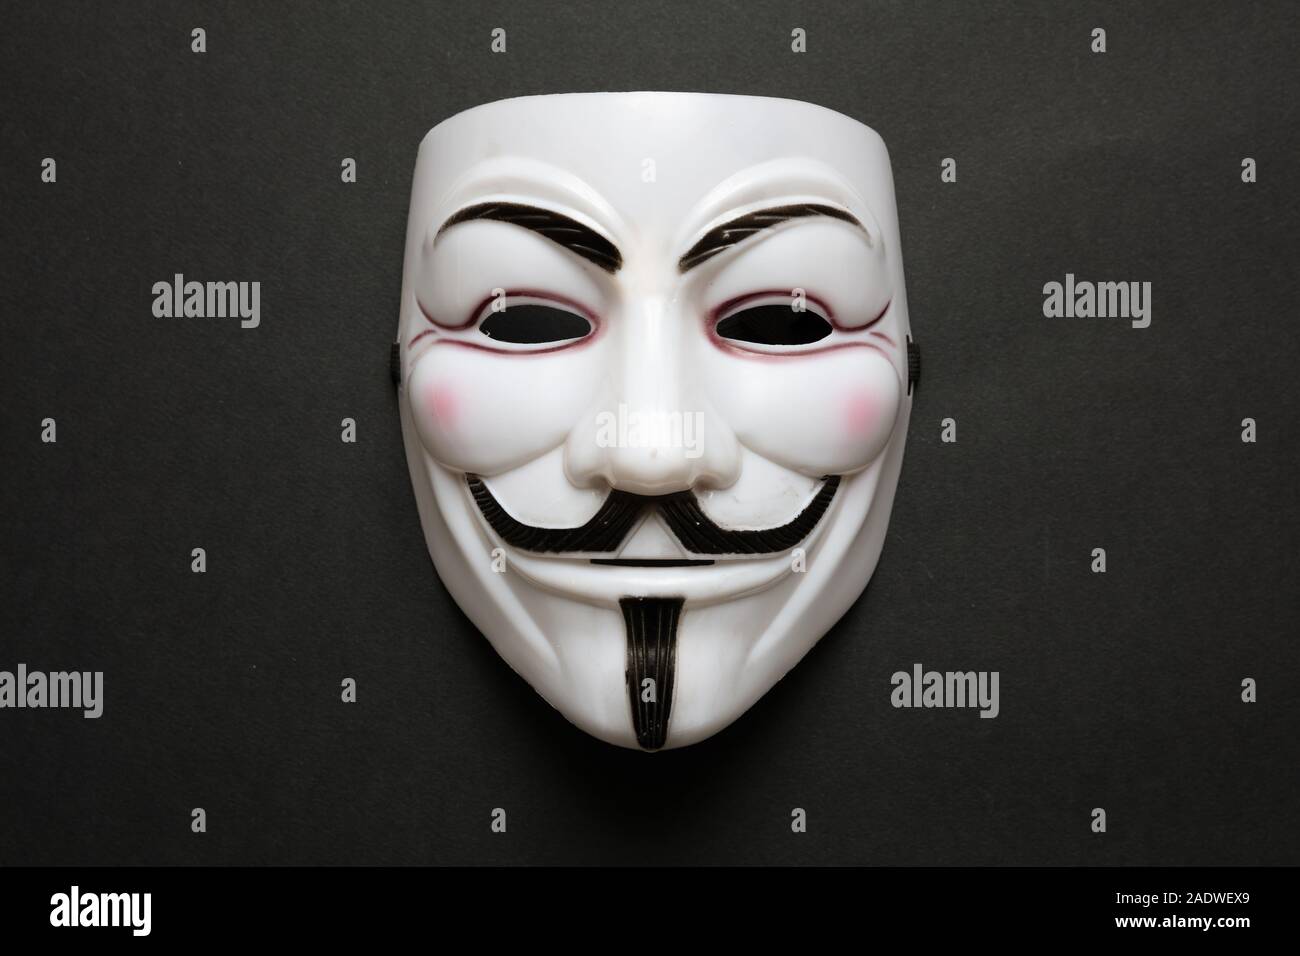 Vendetta máscara facial símbolo del grupo acktivist online anónimo contra el fondo negro, acercamiento. Foto de stock